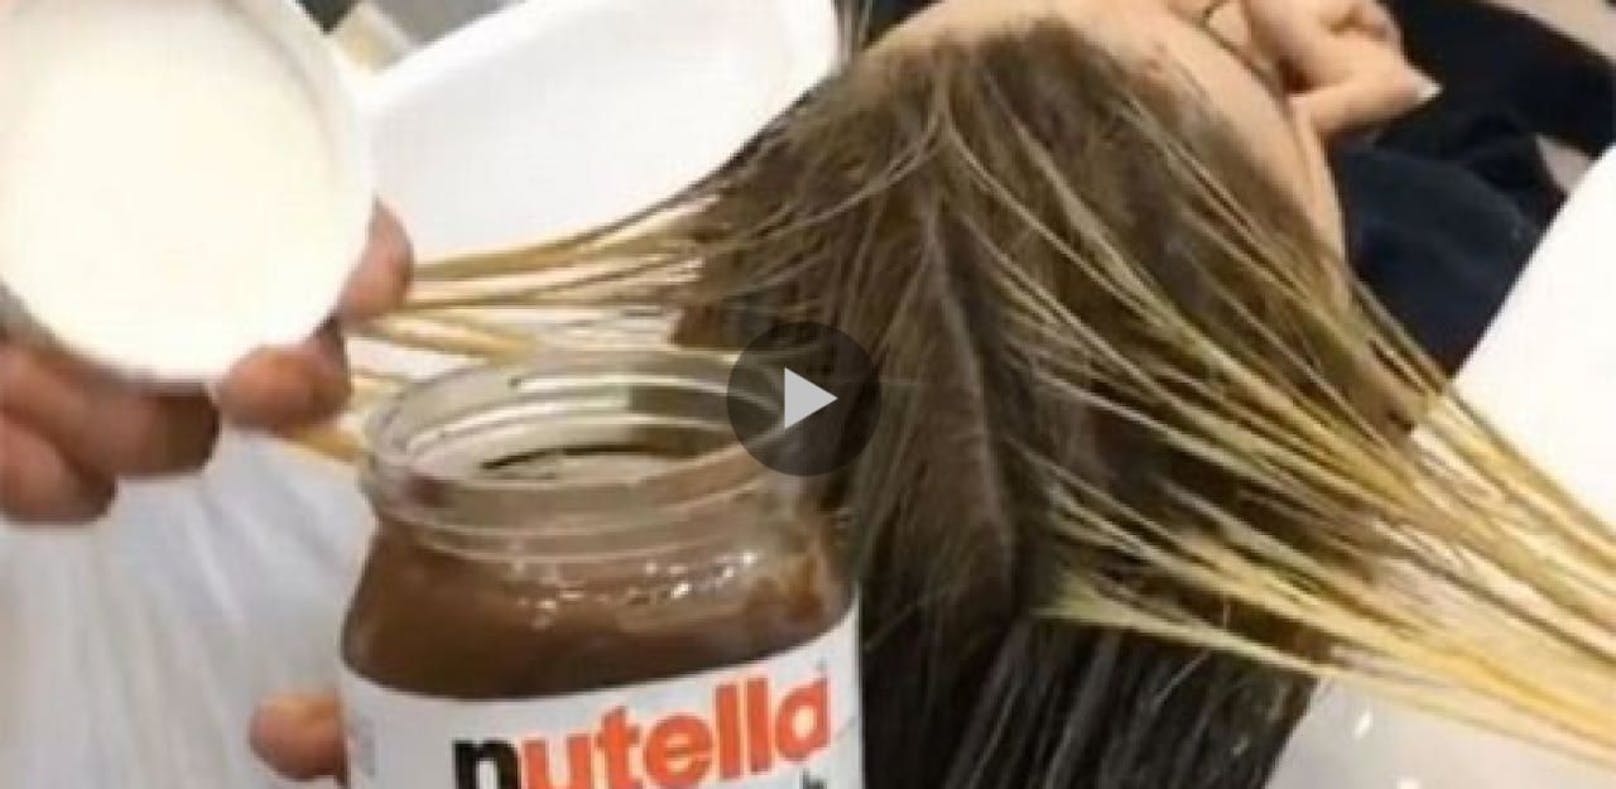 So sieht es aus, wenn man sich mit Nutella die Haare...